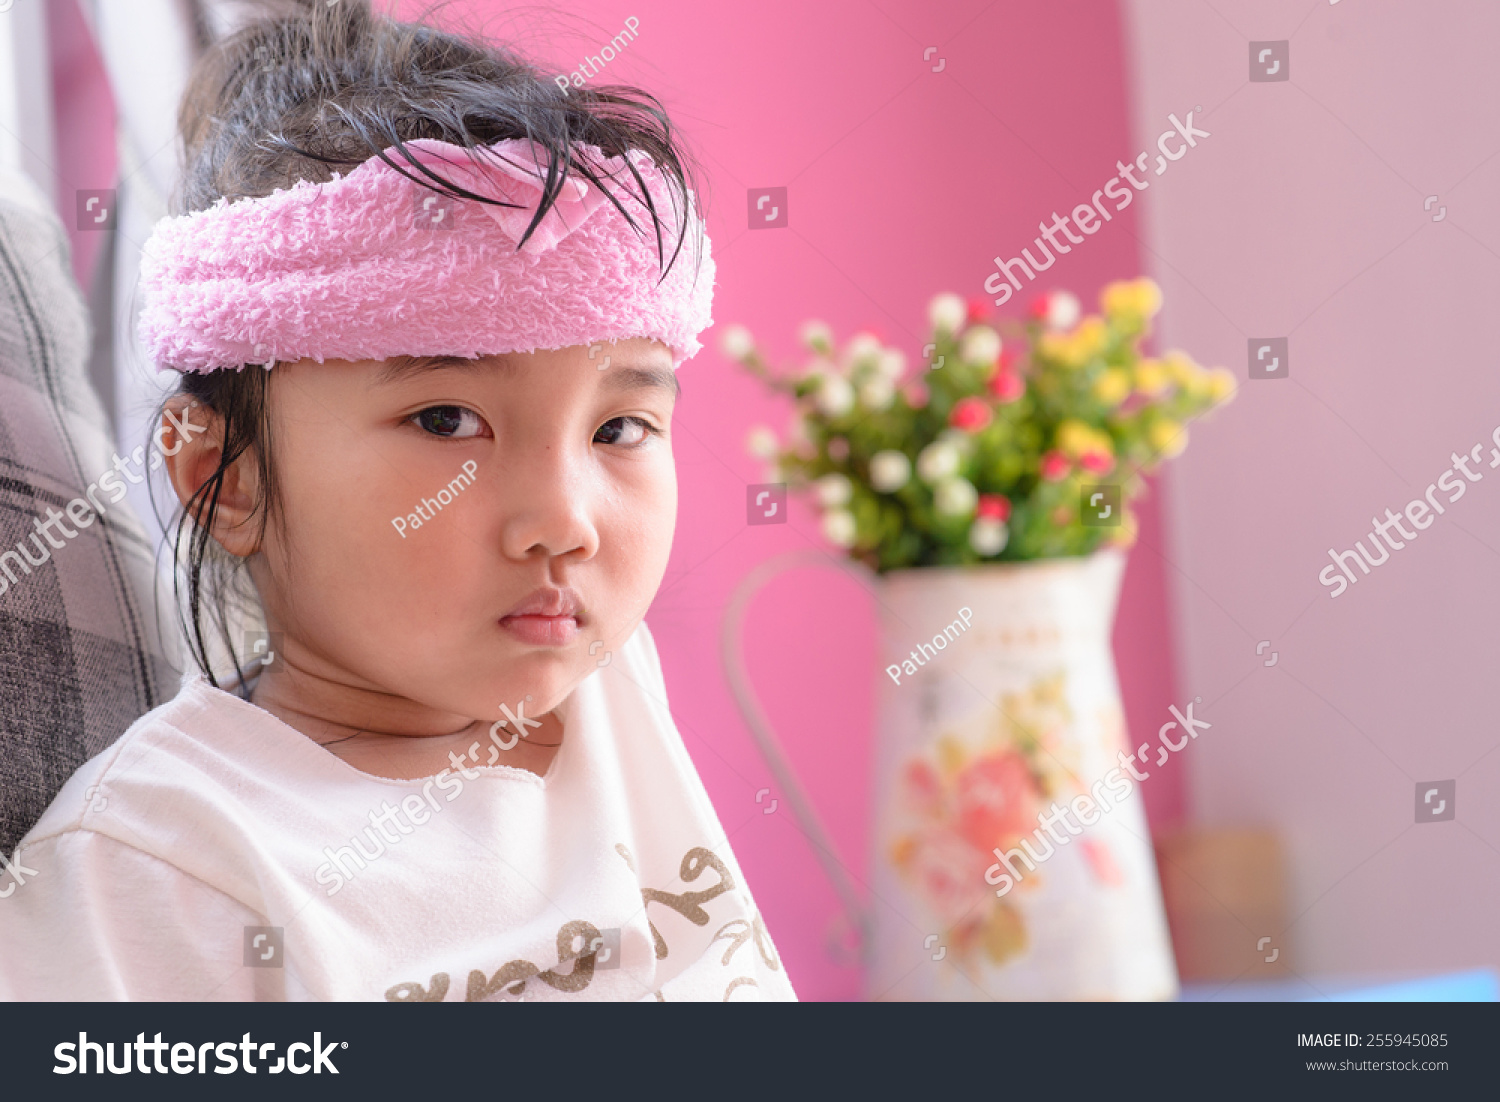 Kid On Sick Mood Stock Photo 255945085 : Shutterstock